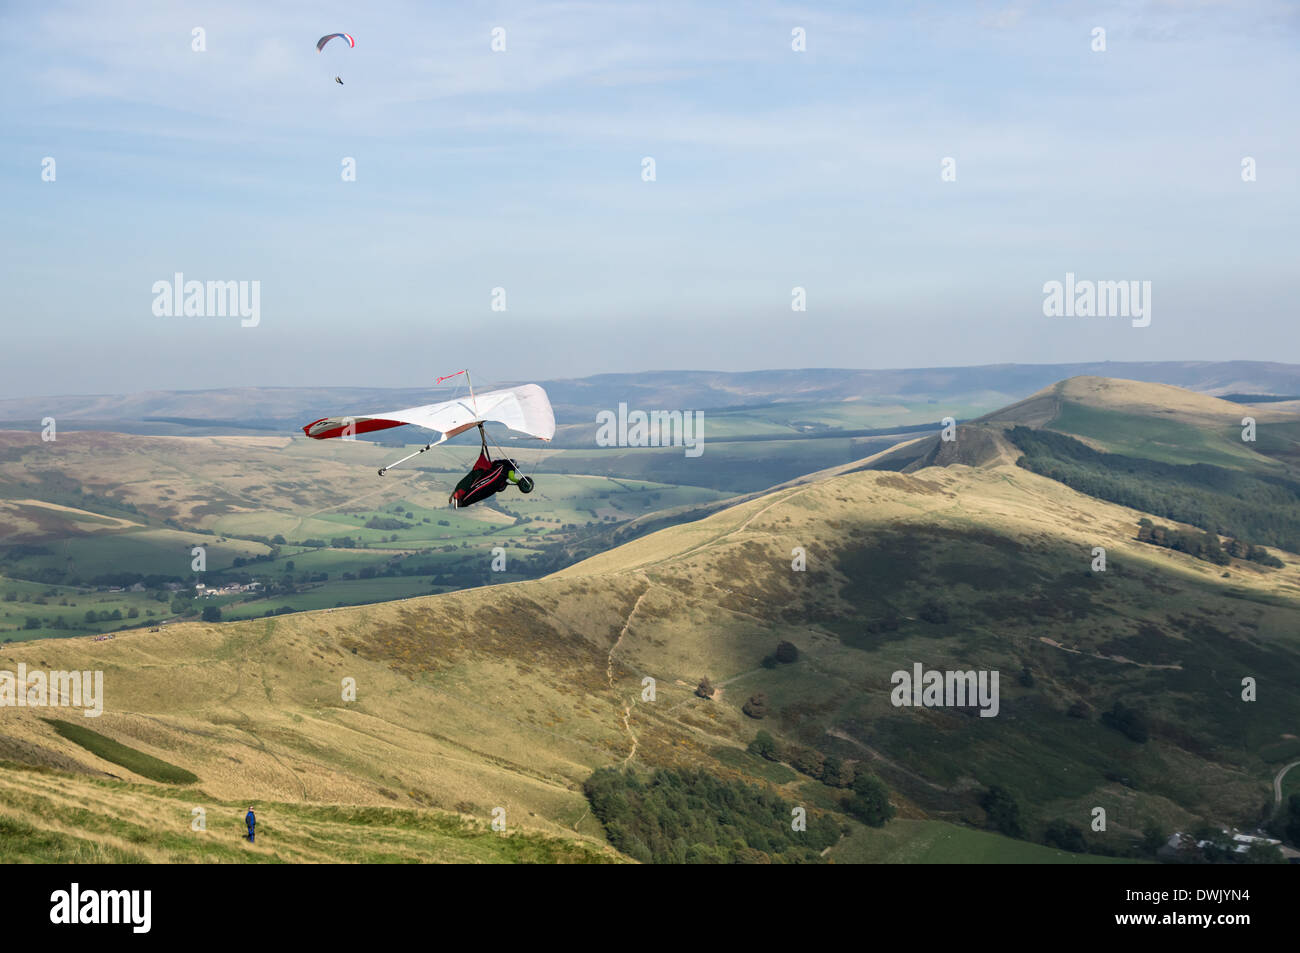 Zwei Männer Drachenfliegen über Hope Valley im Peak District Nationalpark Derbyshire England Vereinigtes Königreich UK Stockfoto